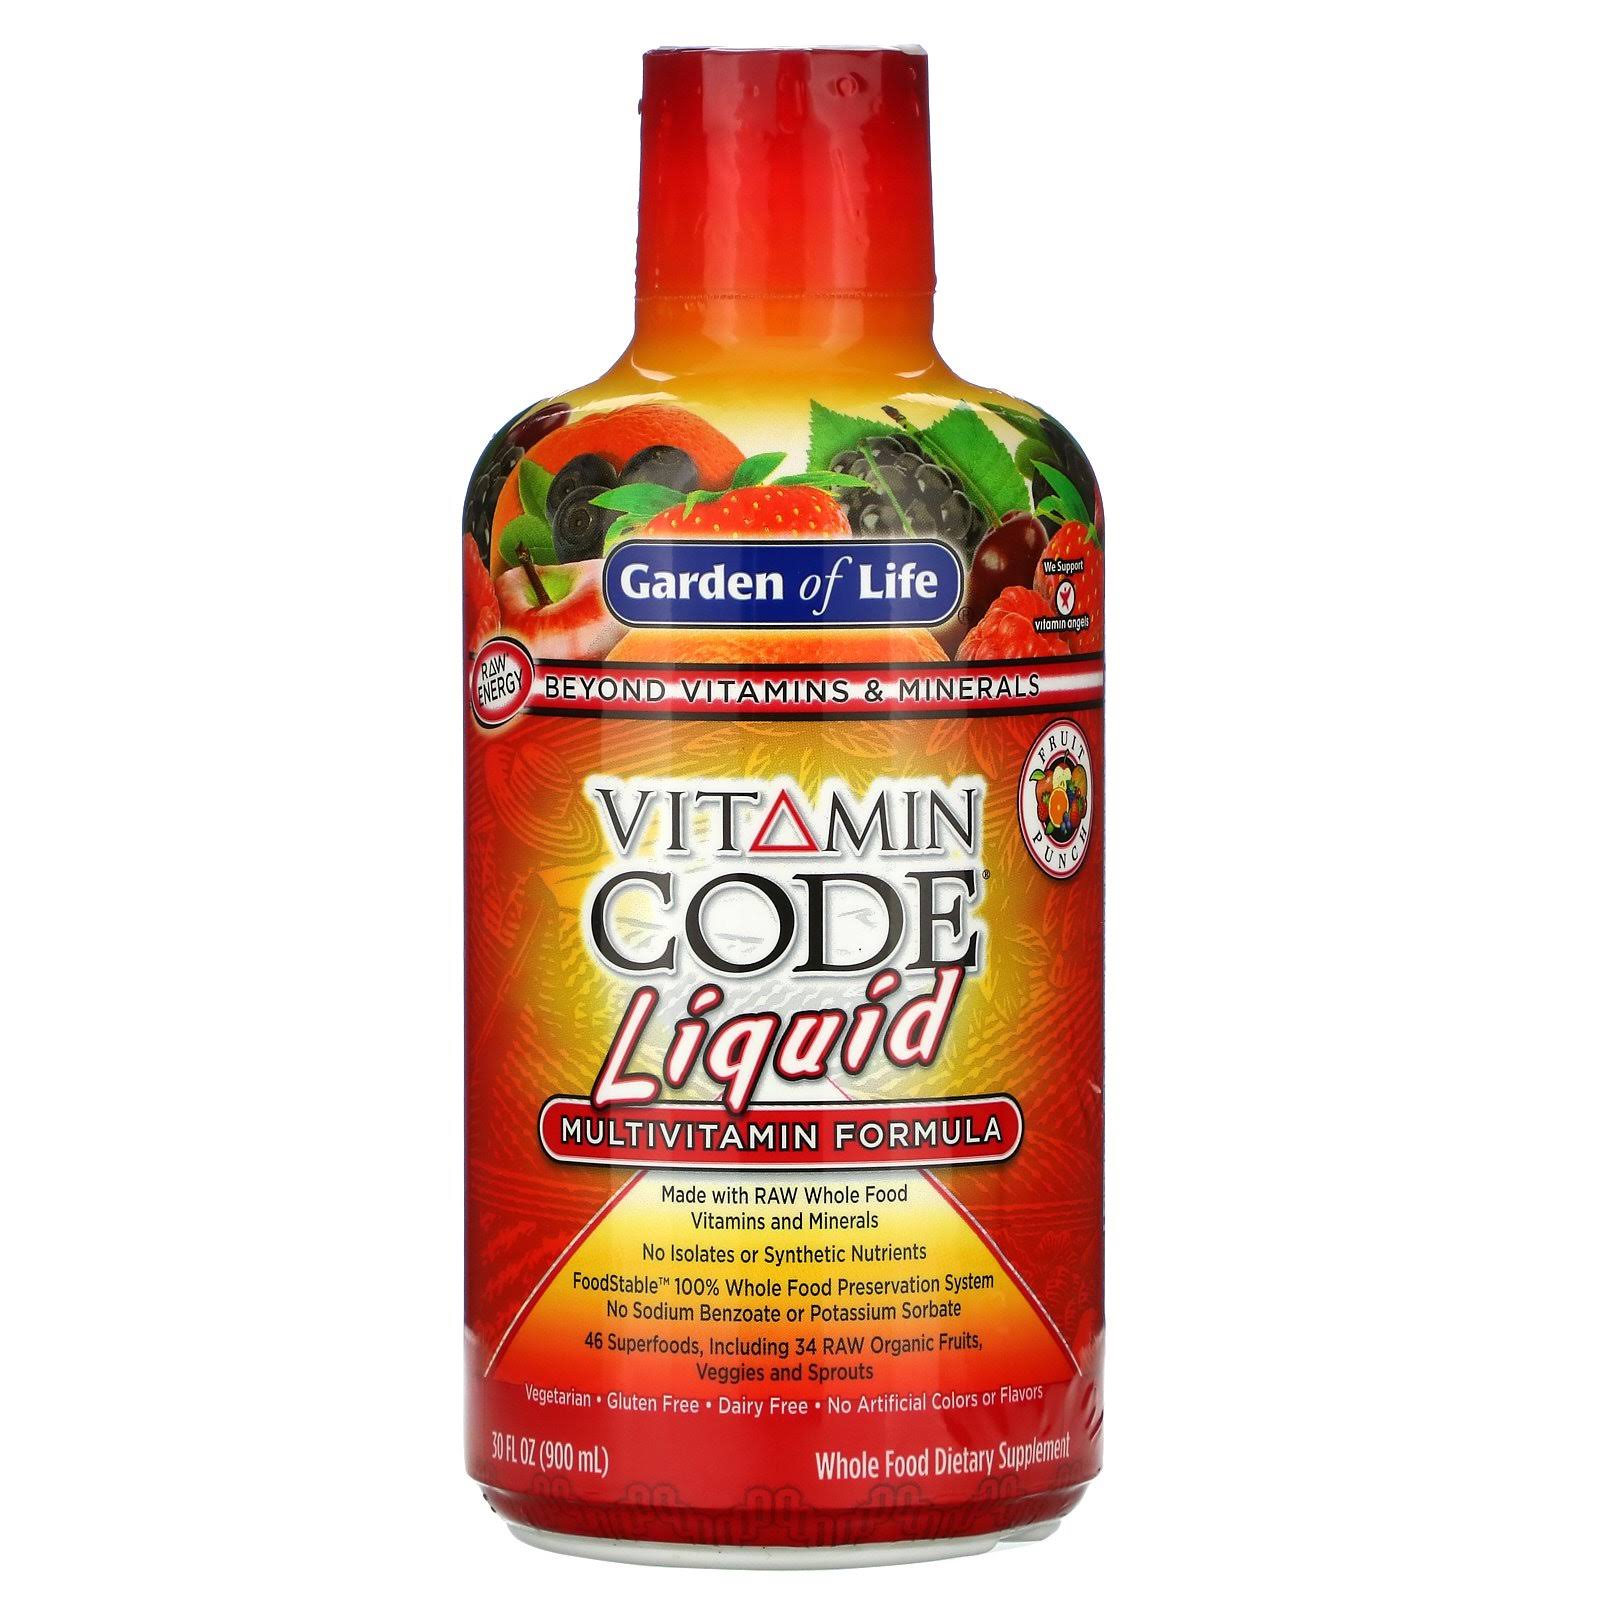 Garden of Life Vitamin Code Liquid Multivitamin - Fruit Punch - 30 fl oz